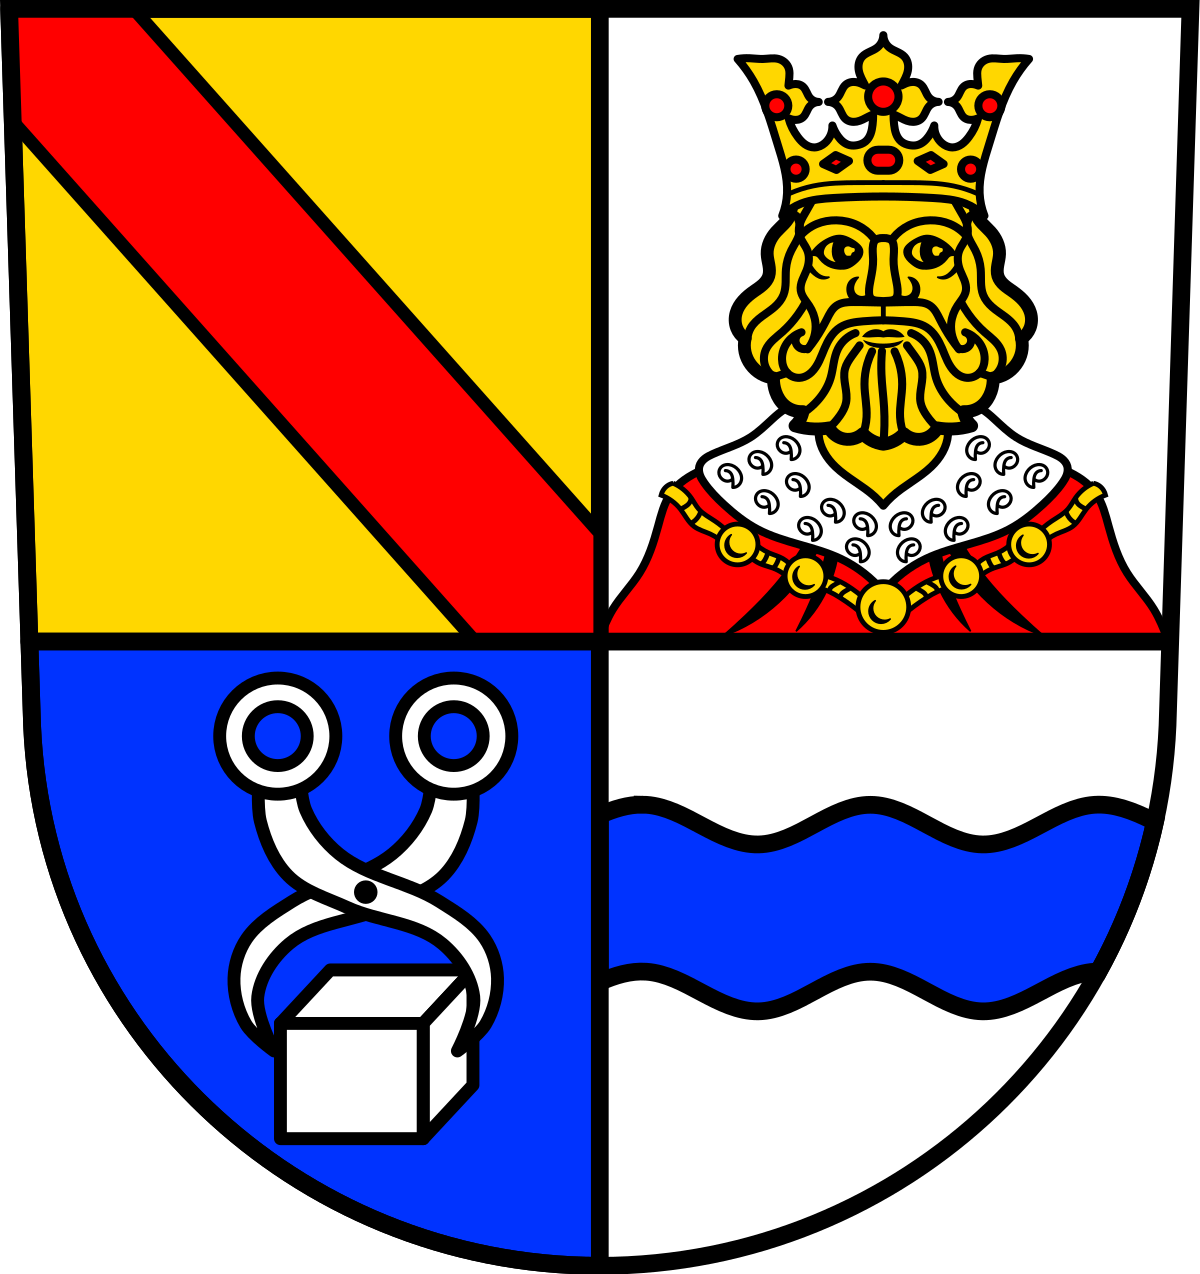 Gemeinde Königsbach-Stein (Wappen)